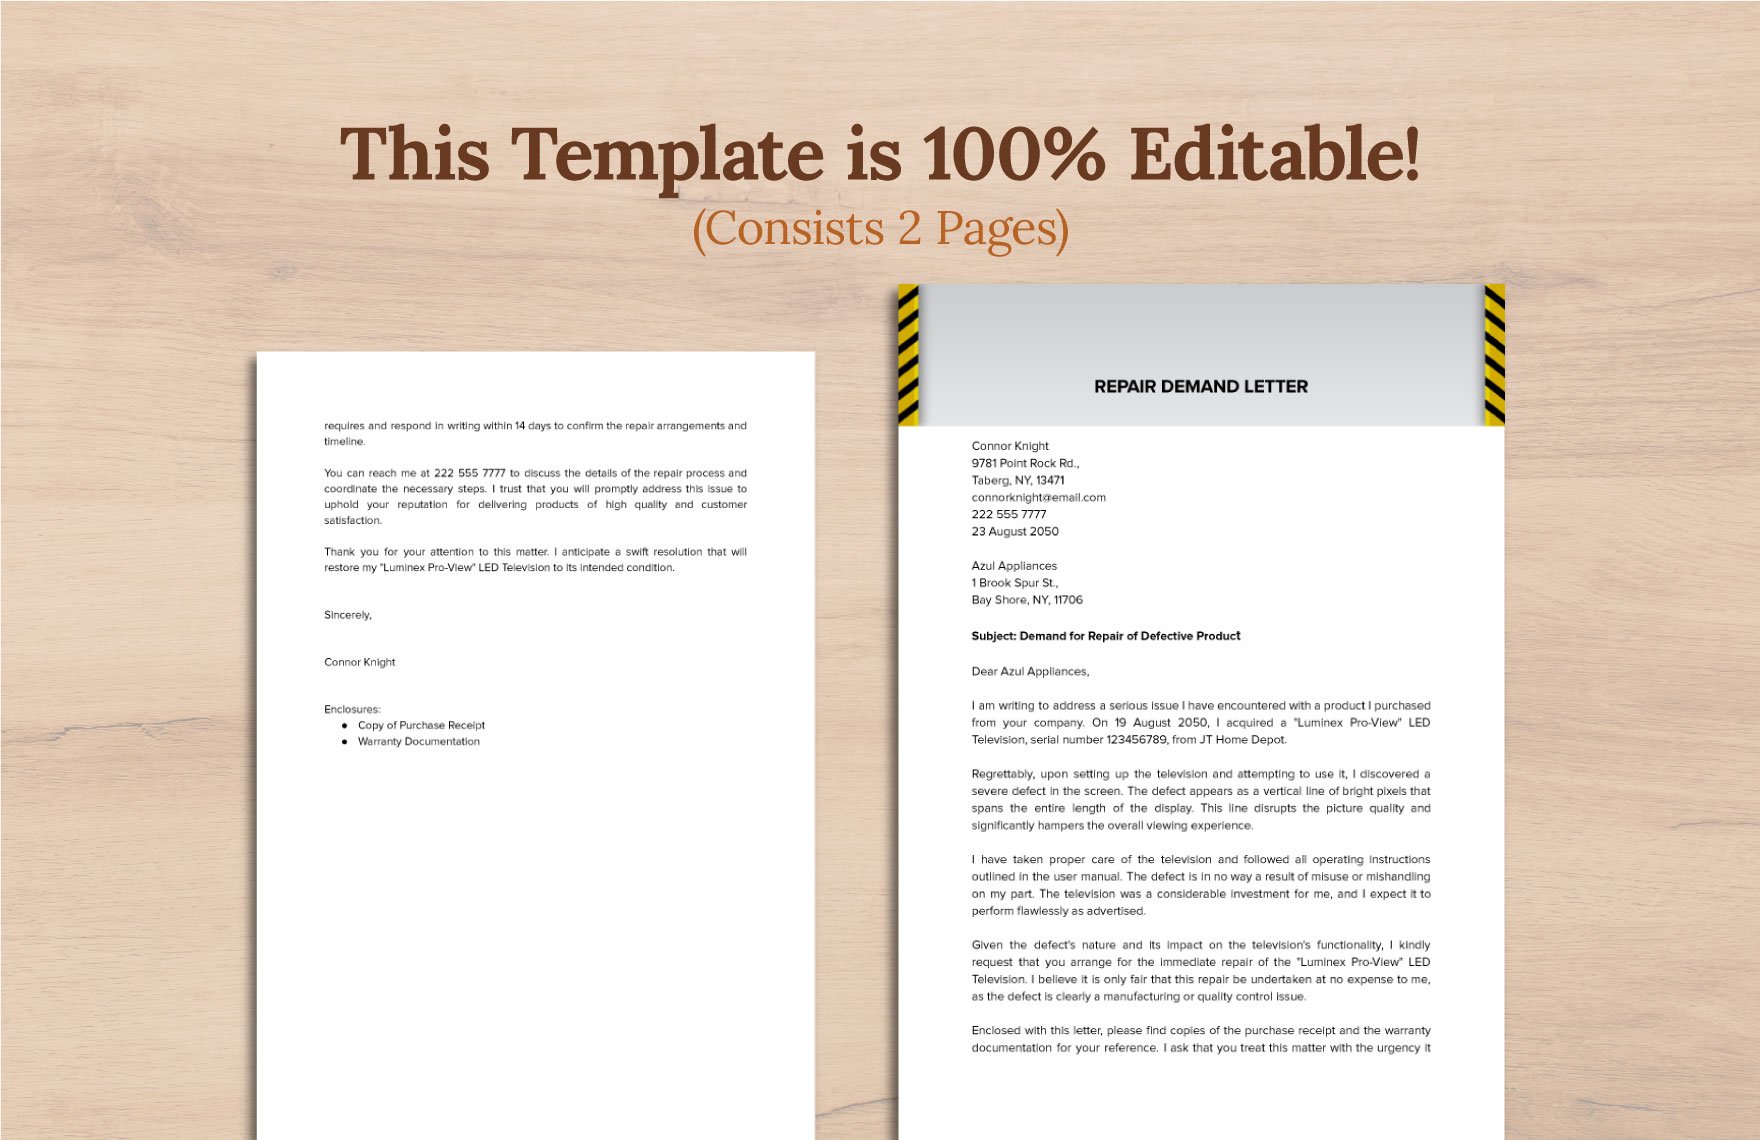 Sample Repair Demand Letter Template